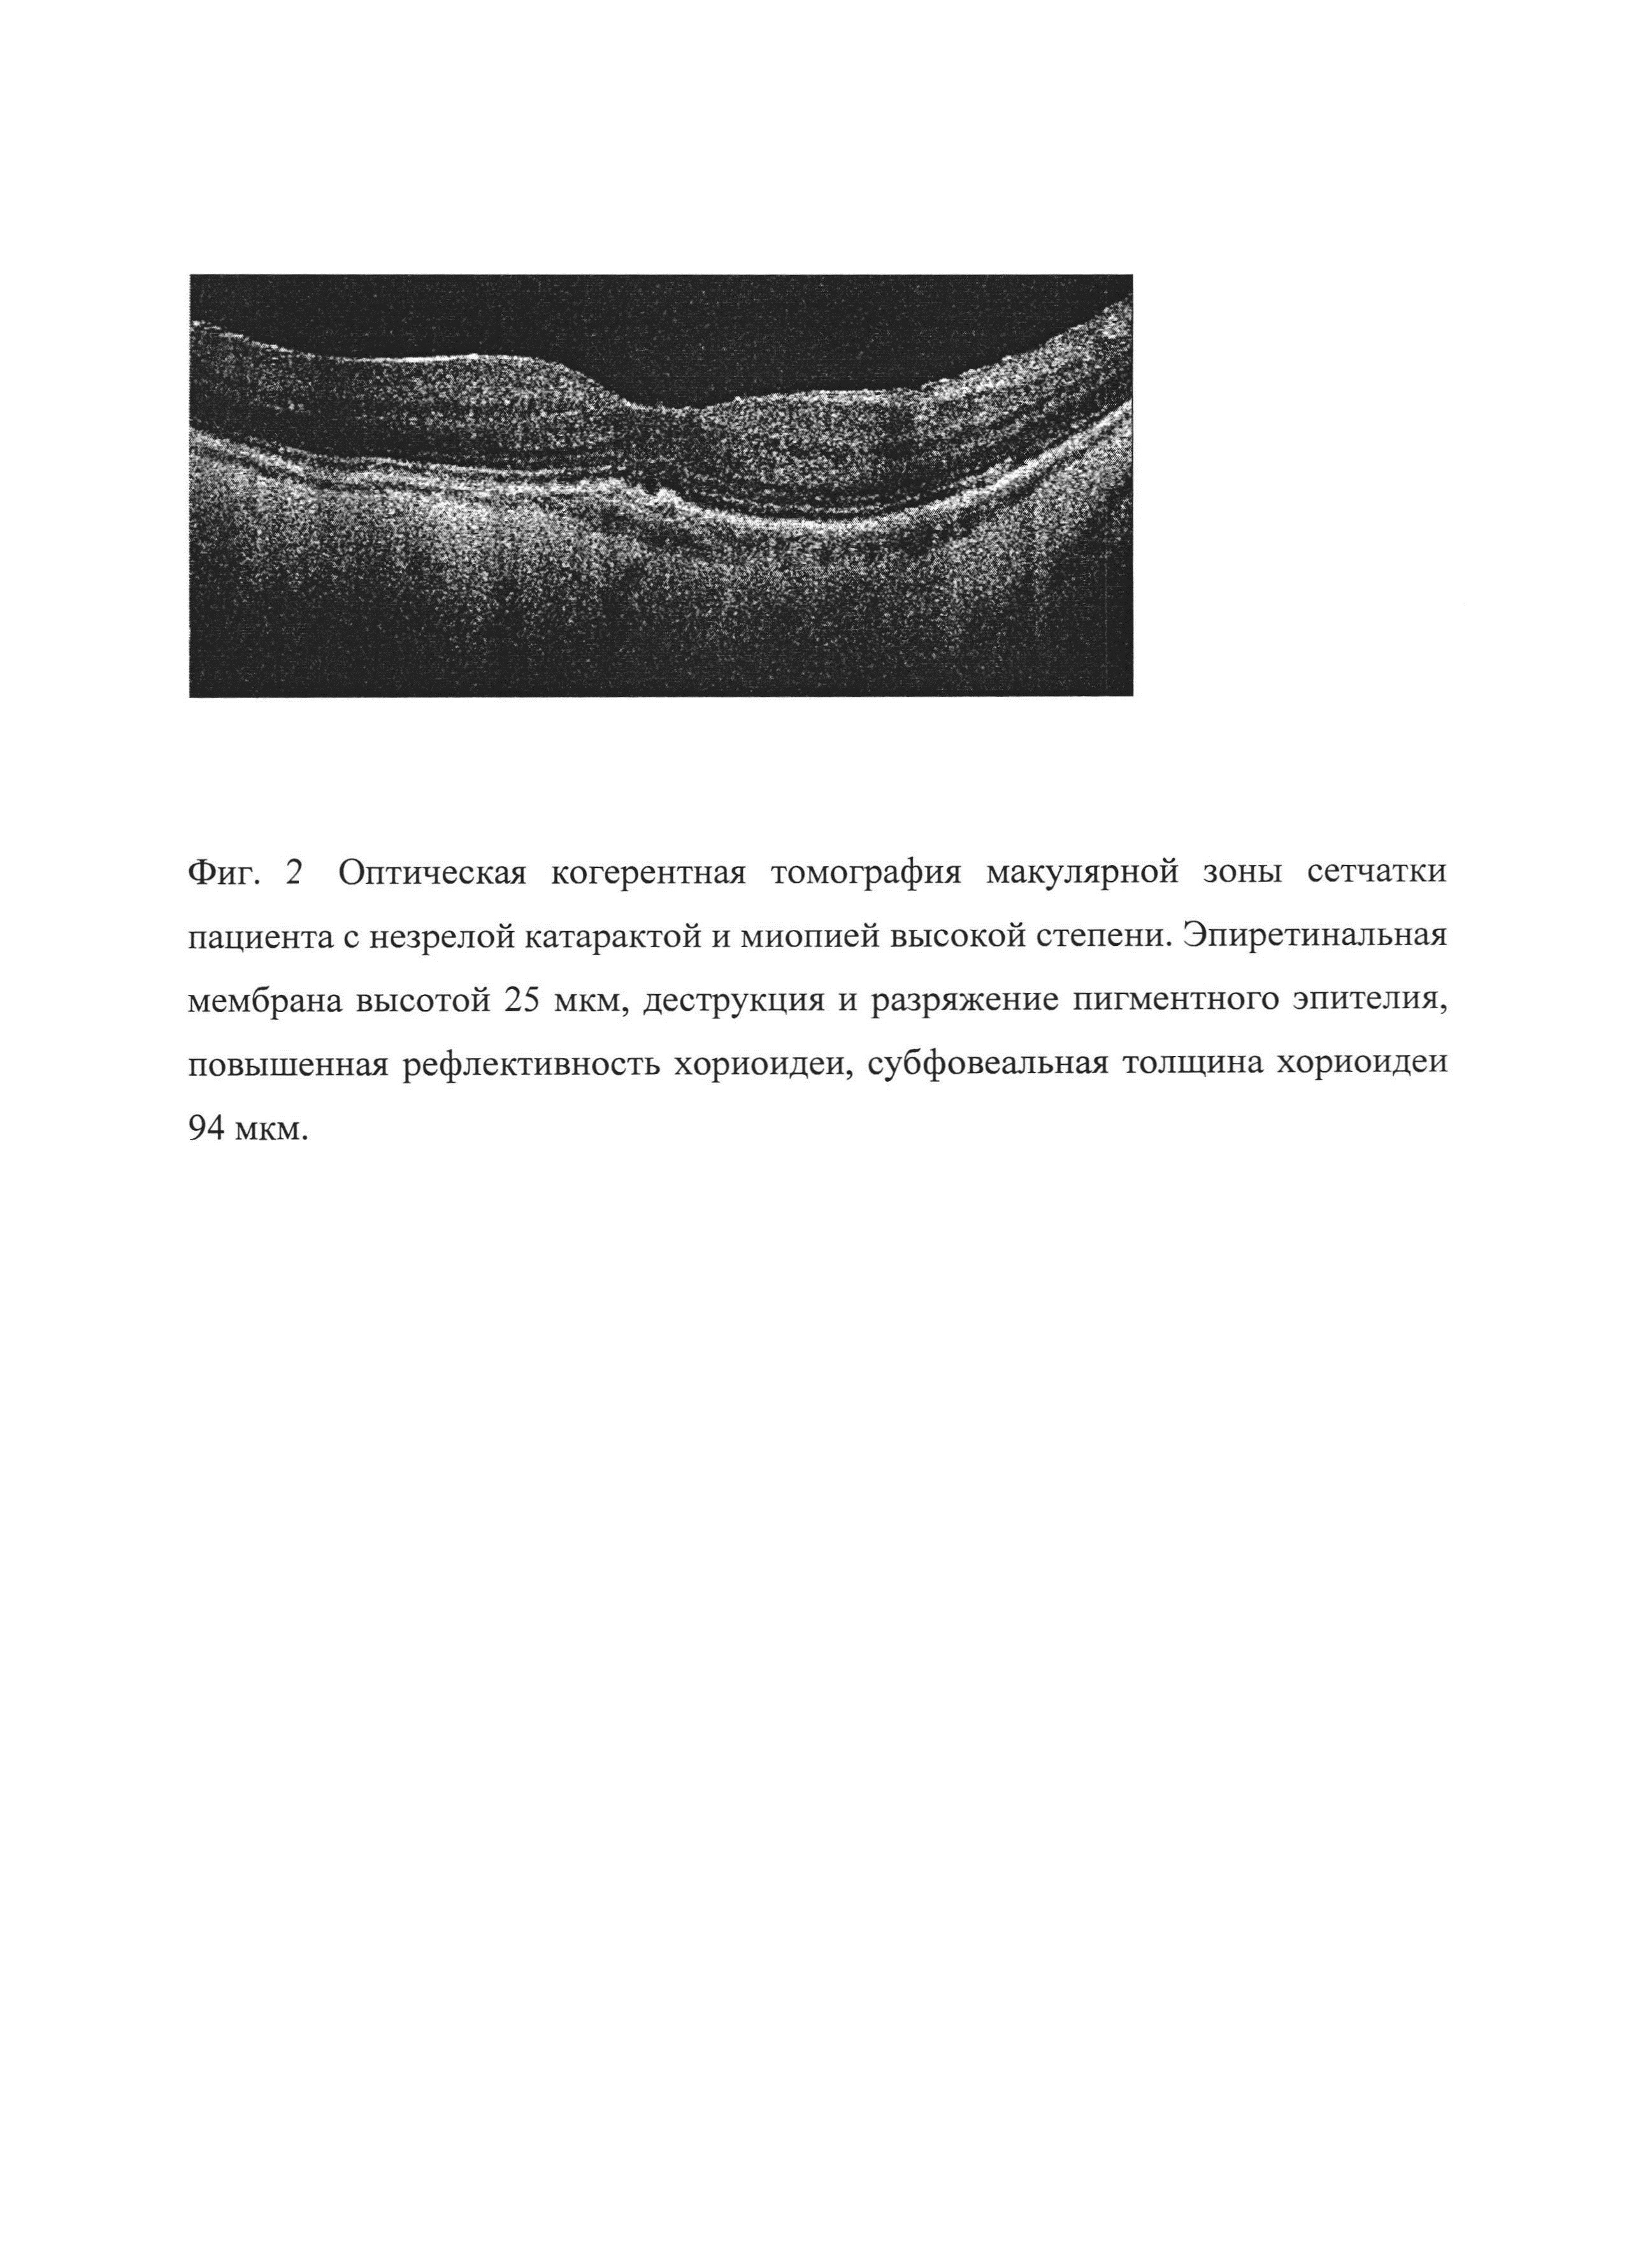 Способ прогнозирования остроты зрения после факоэмульсификации начальной и незрелой катаракты при миопии высокой степени